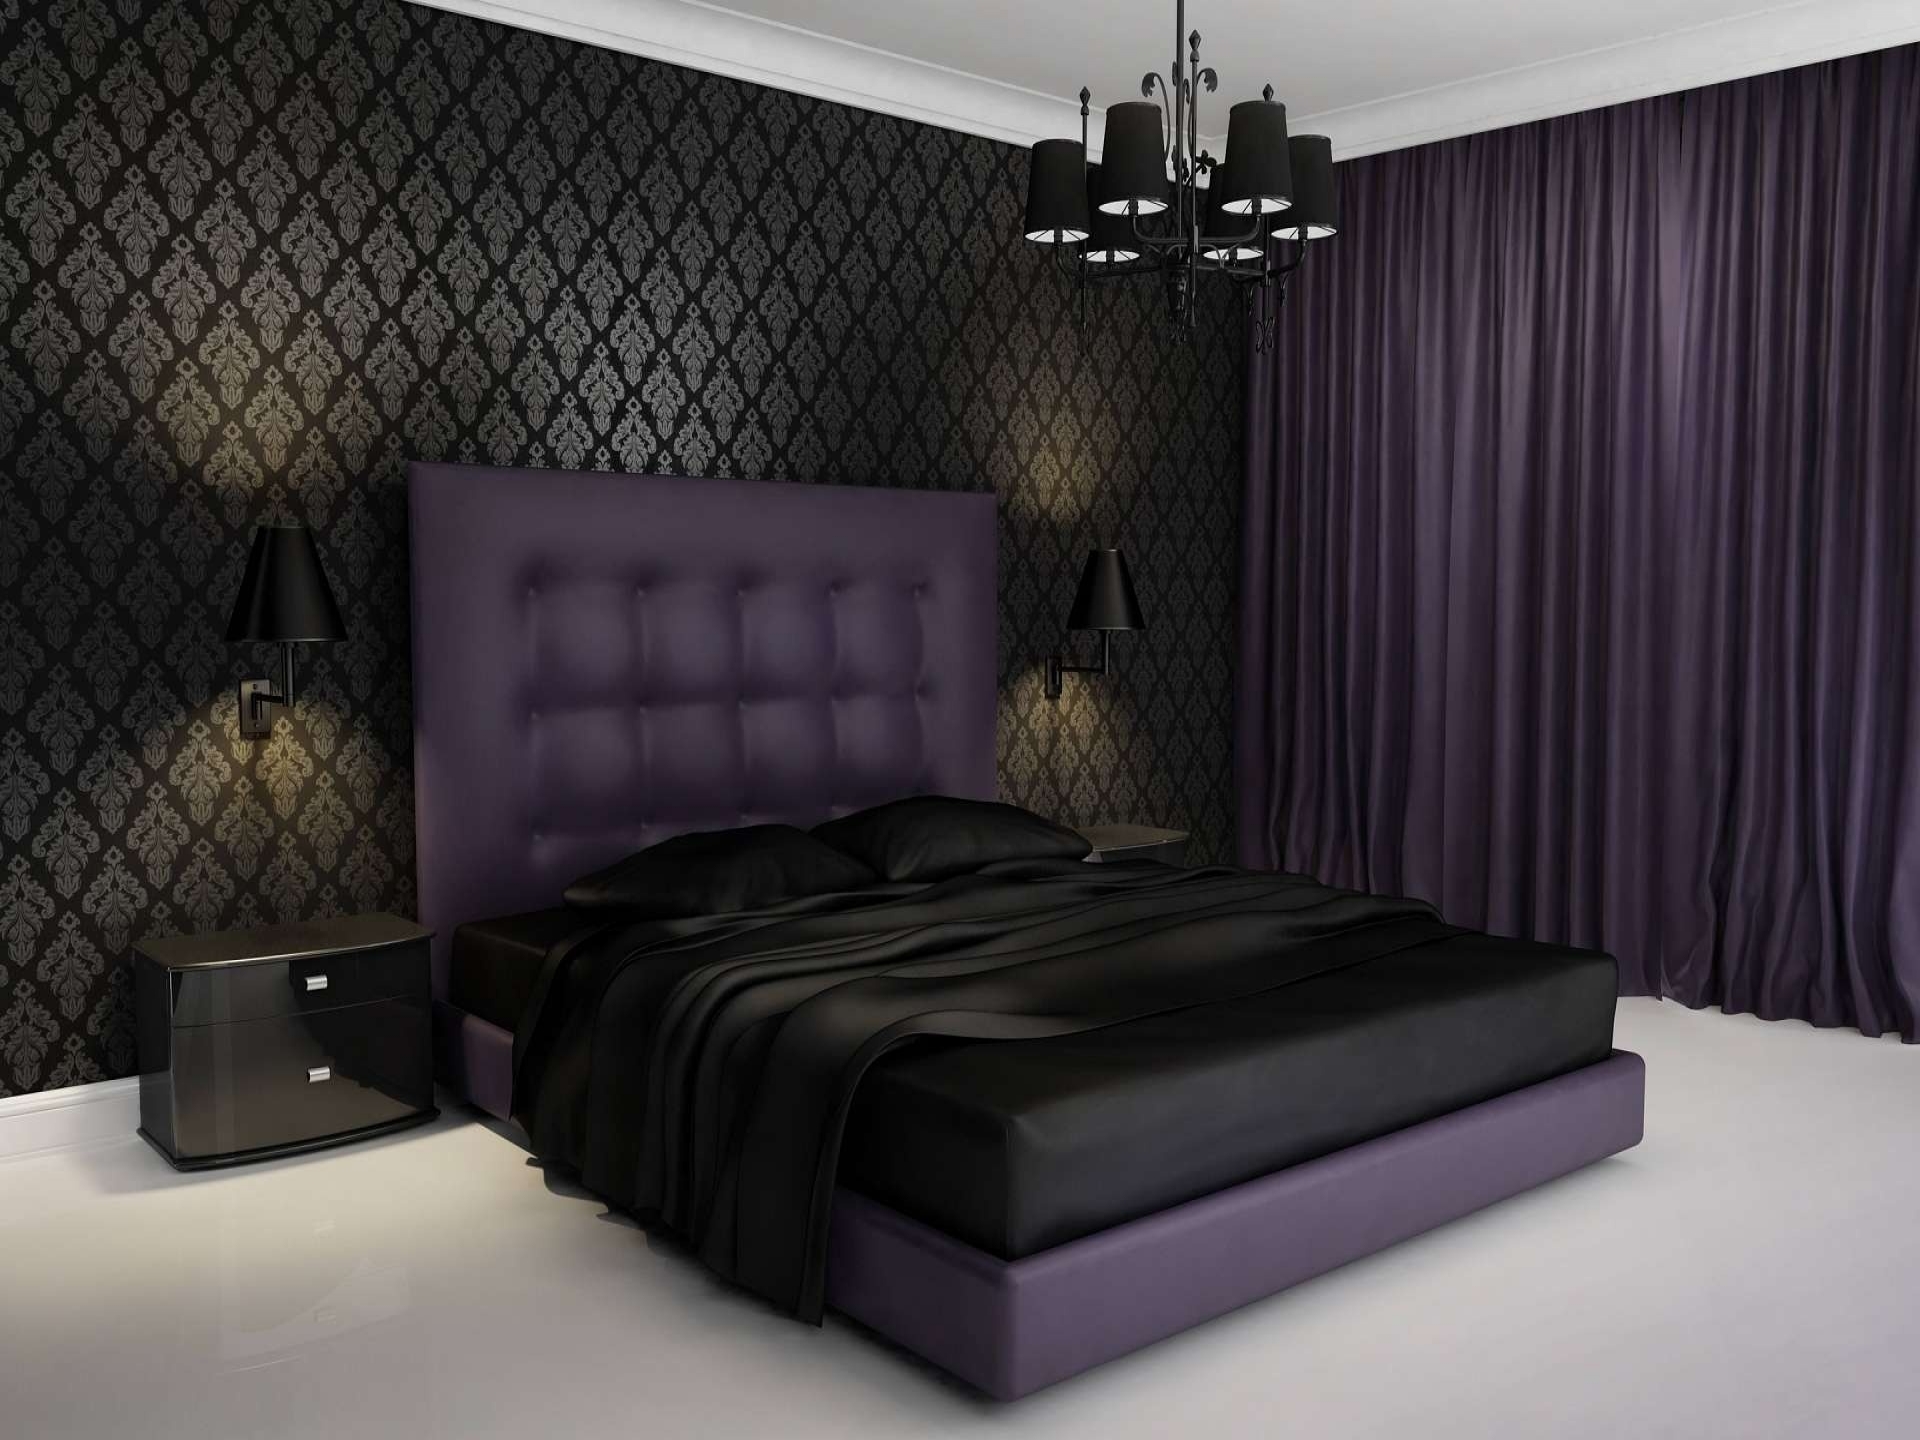 bed wallpaper,bedroom,bed,purple,furniture,room